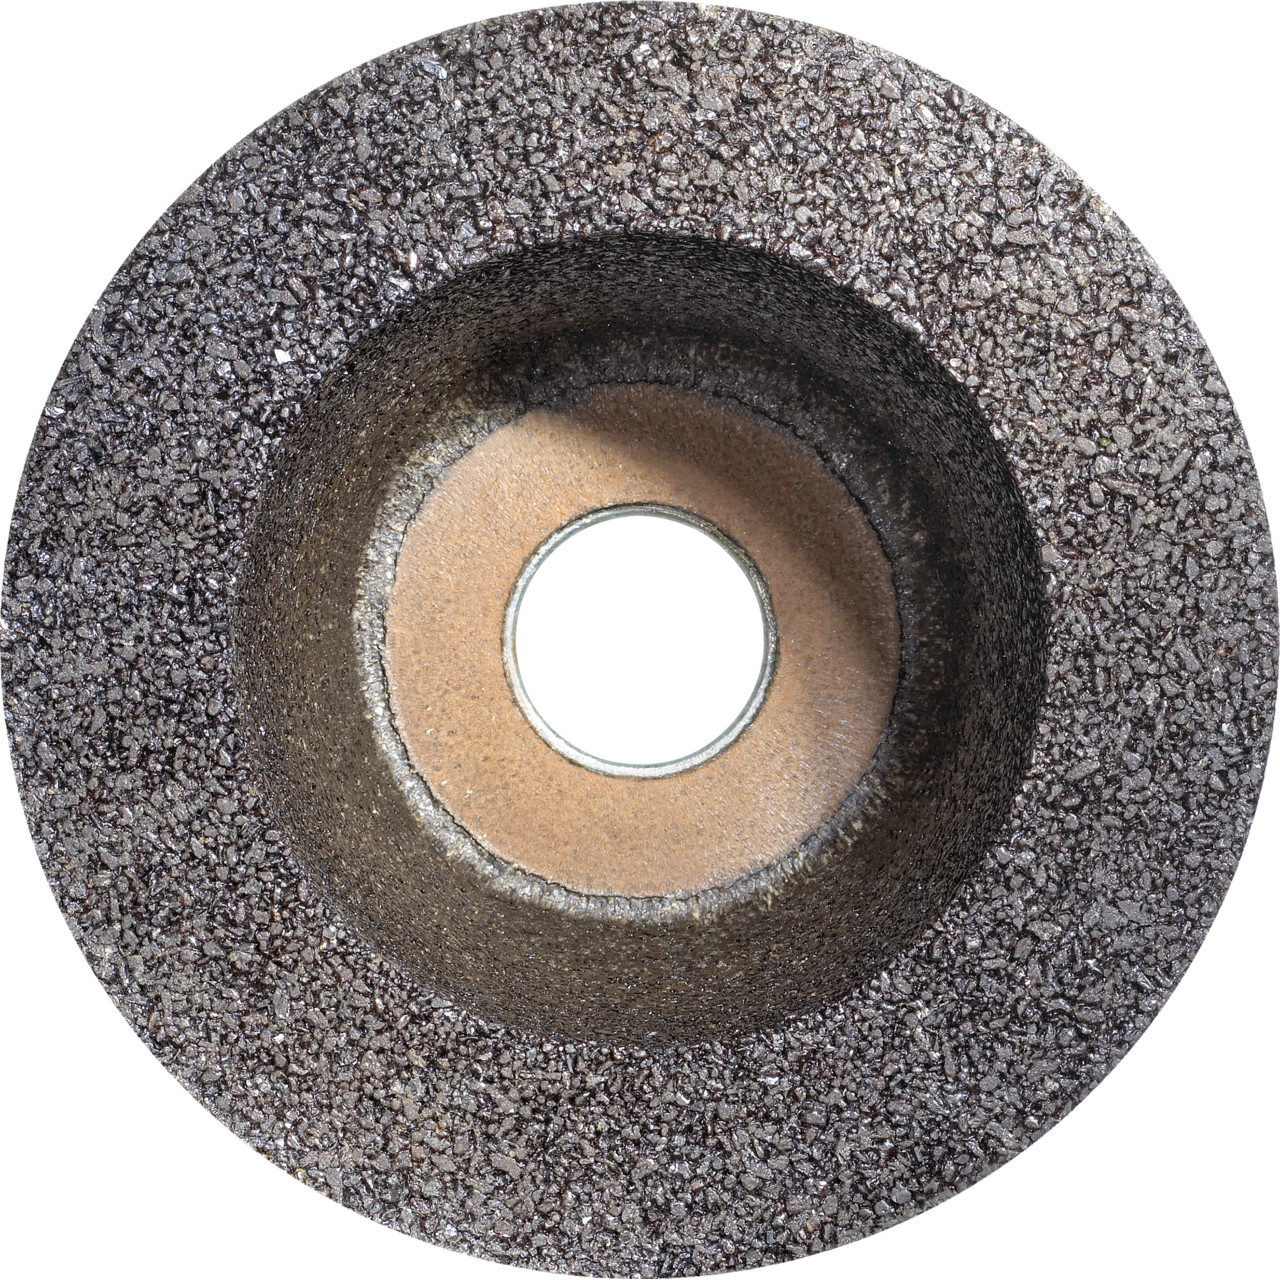 TYROLIT Pot en résine synthétique D/JxPxH 110/90x55x22,23 Pour acier, forme : 11BT (pot à meuler), art. 310183